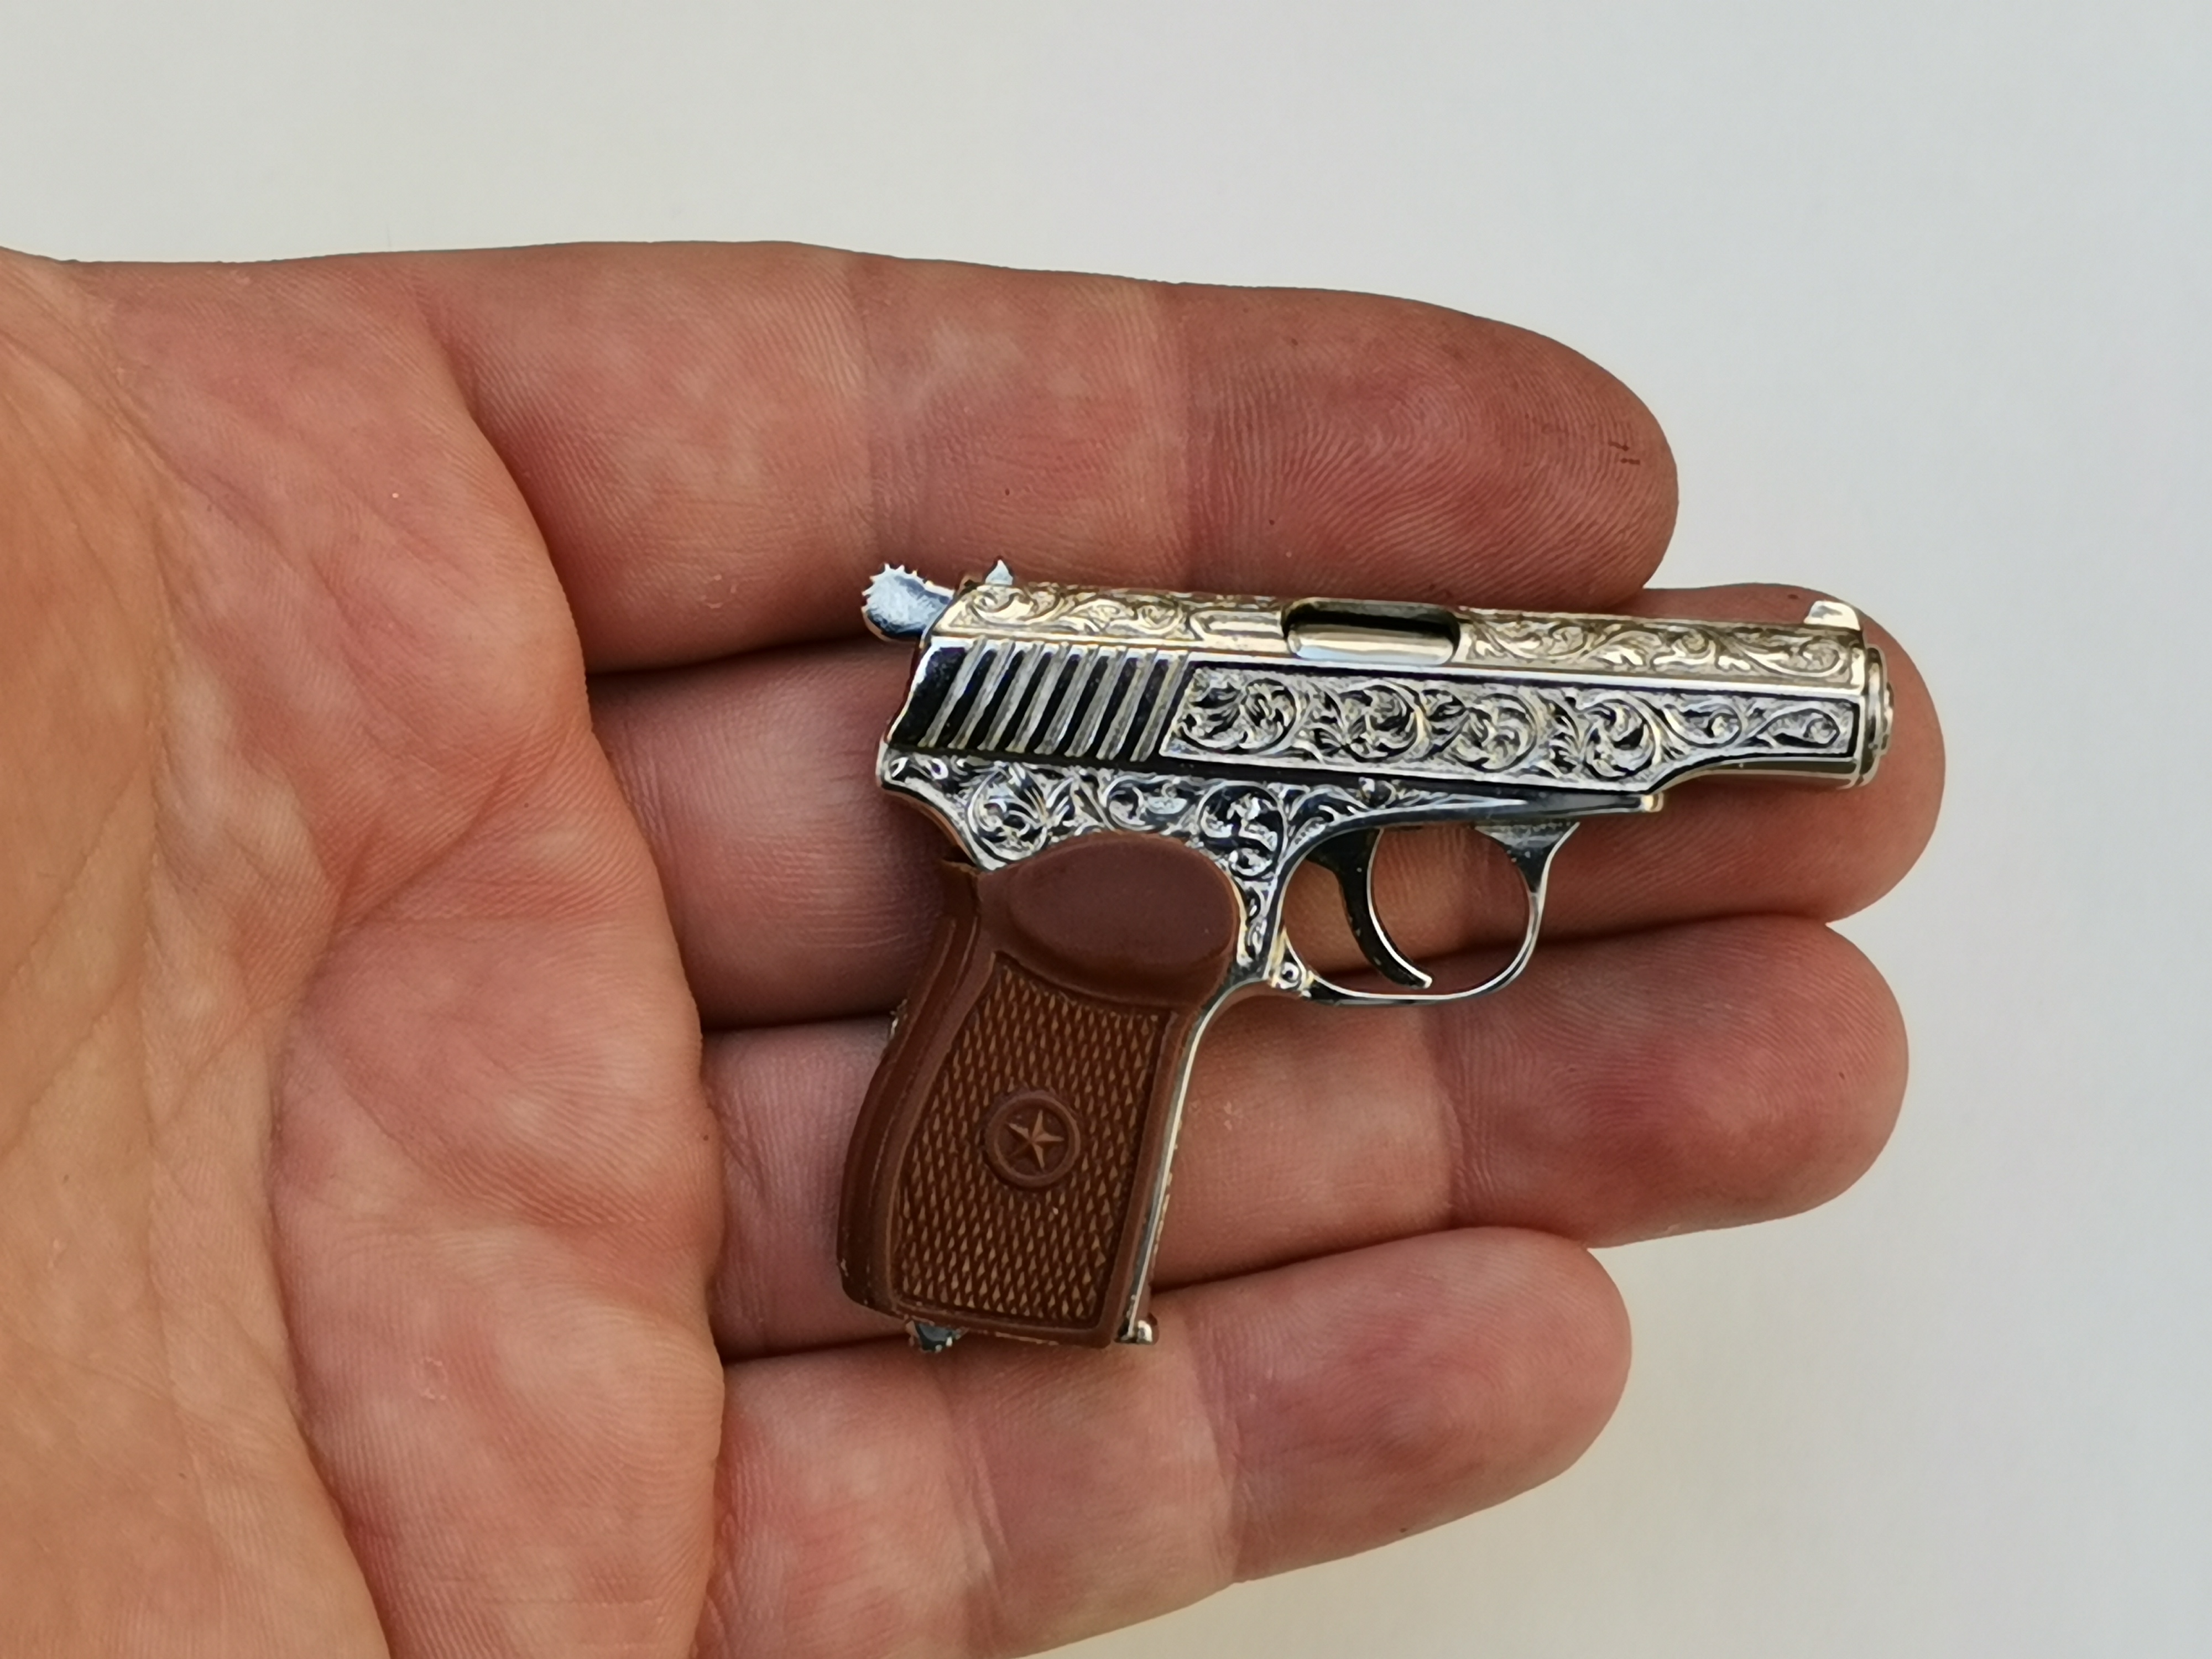 Makarov pistol engraved ����������� 2